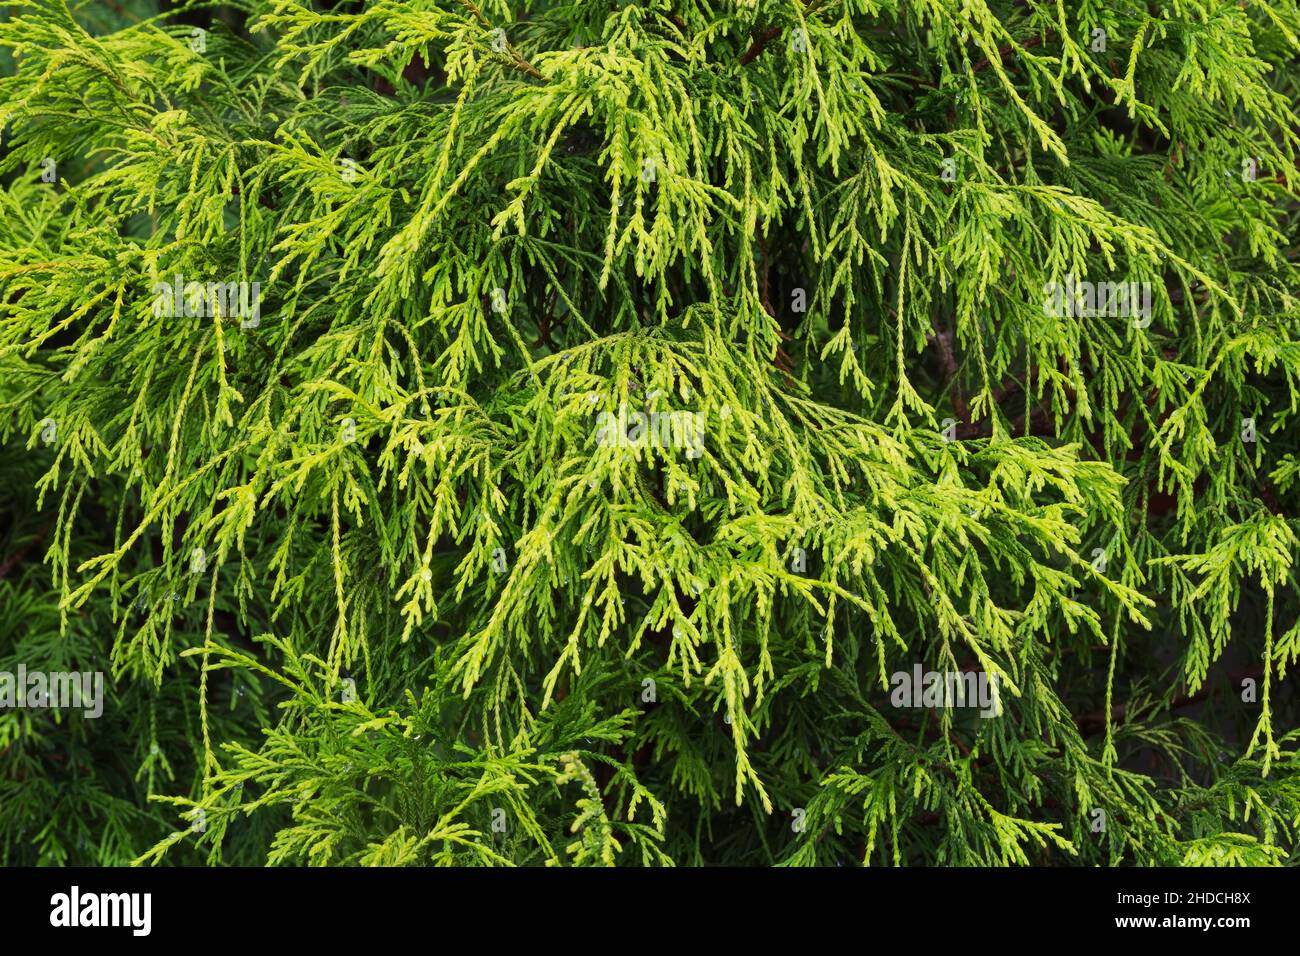 Chamaecyparis pisifera 'Filifera' - False Cypress tree. Stock Photo